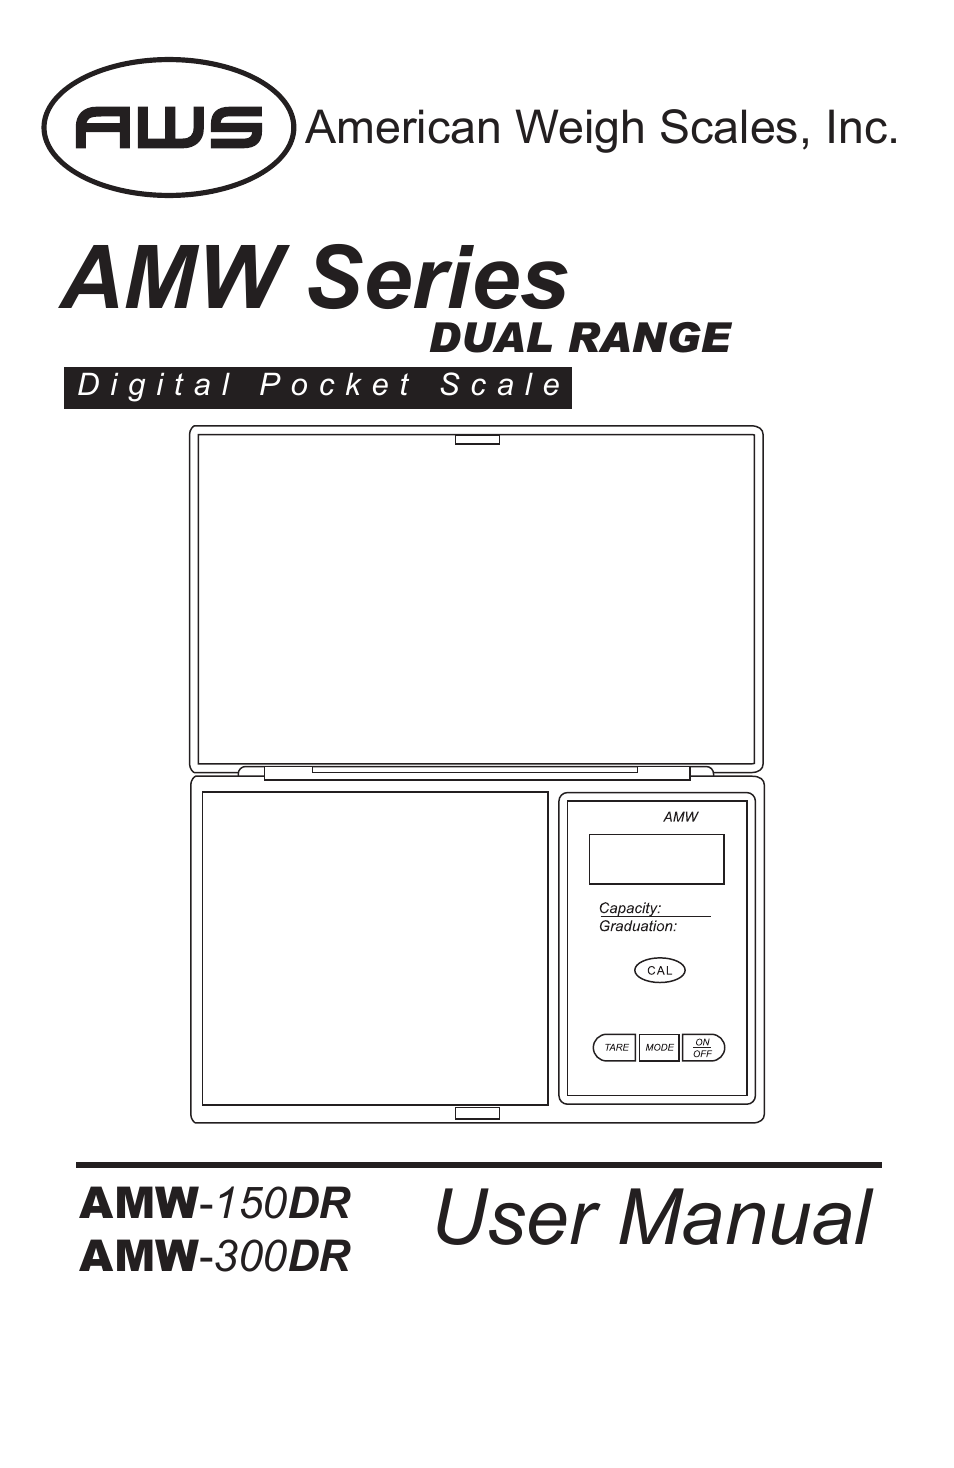 AMW-300DR